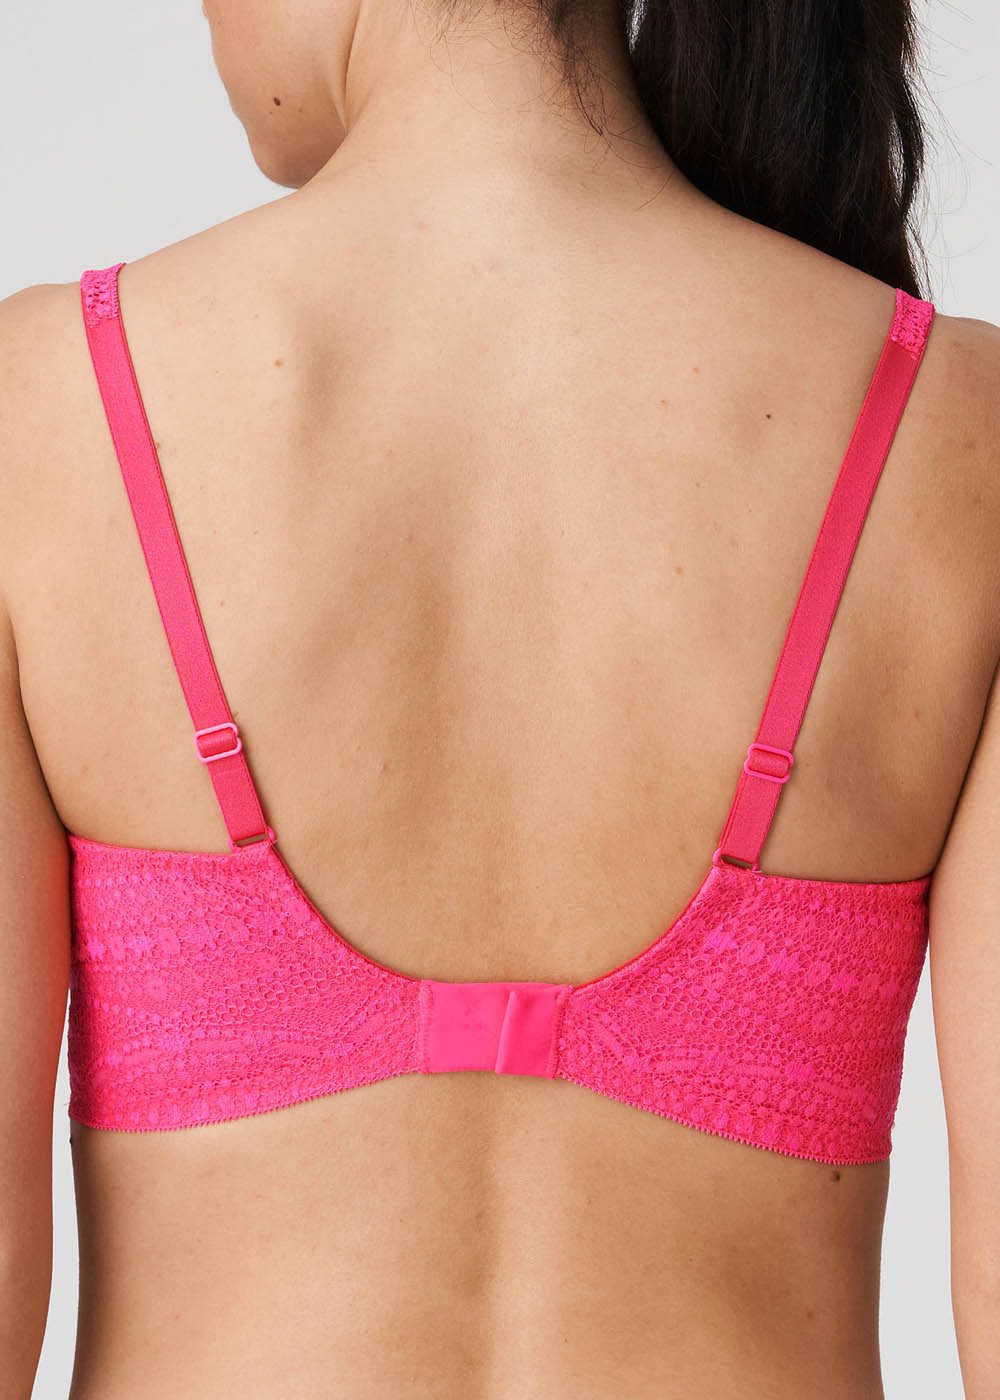 Soutien-gorge Rembourr Forme Coeur Twist de Prima Donna Blogger Pink